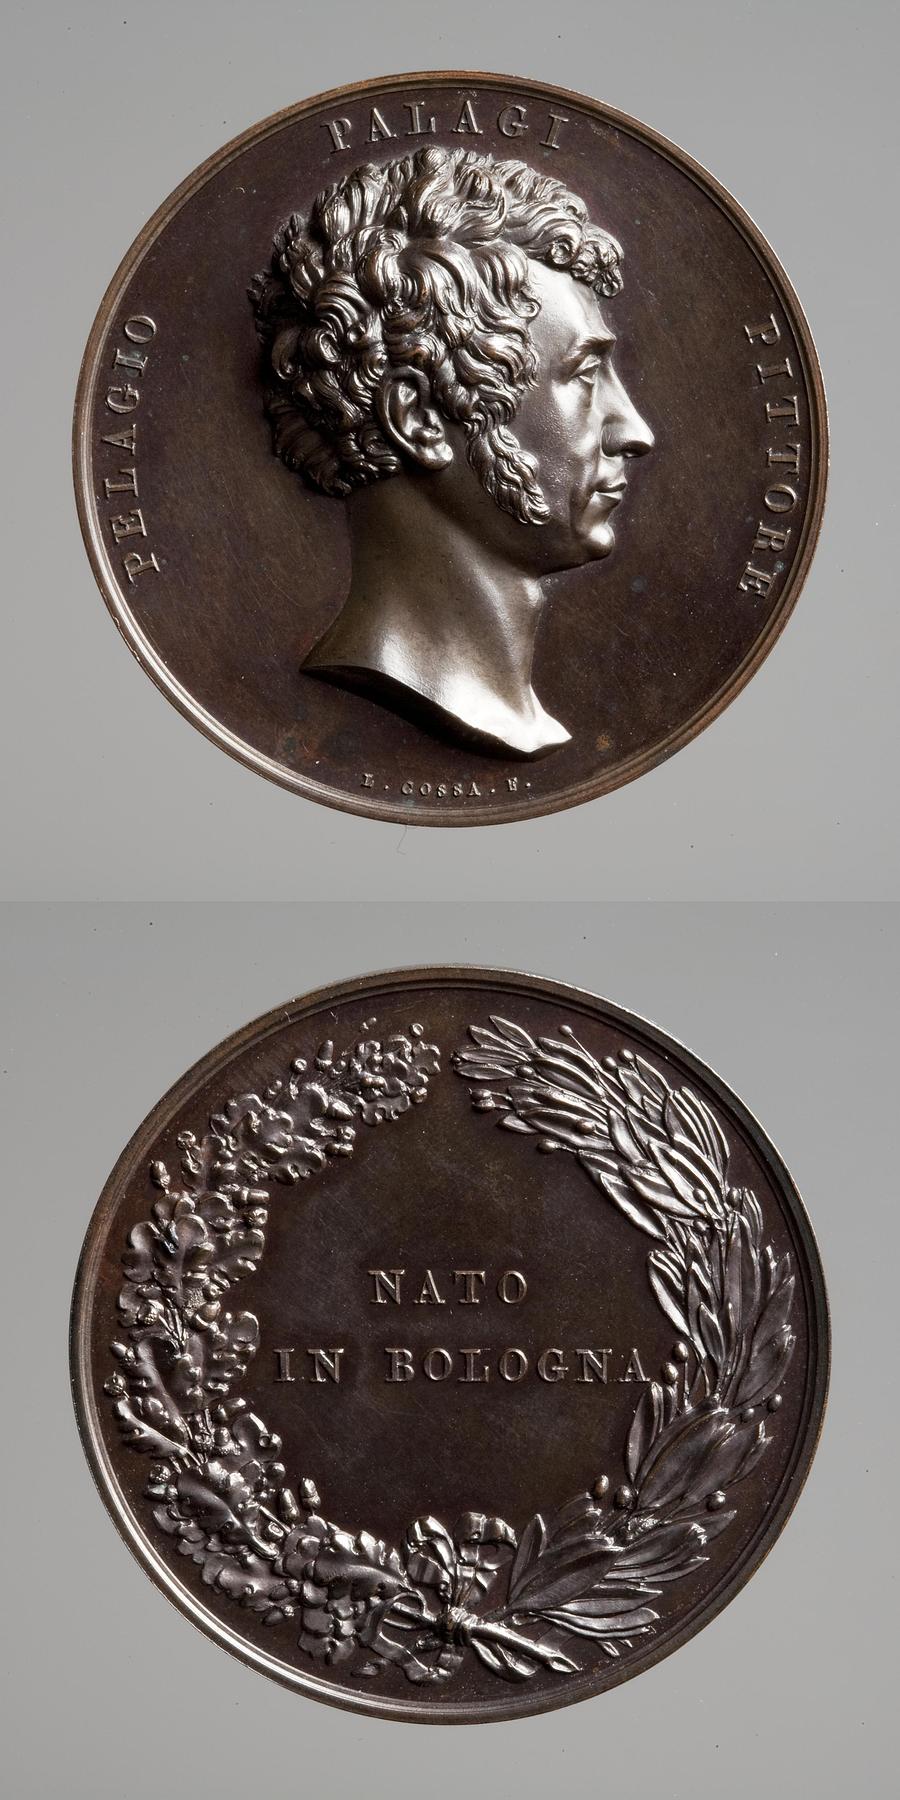 Medaljens forside: Pelagio Palagi. Medaljens bagside: Inskription og en krans af ege- og laurbærgrene, F57